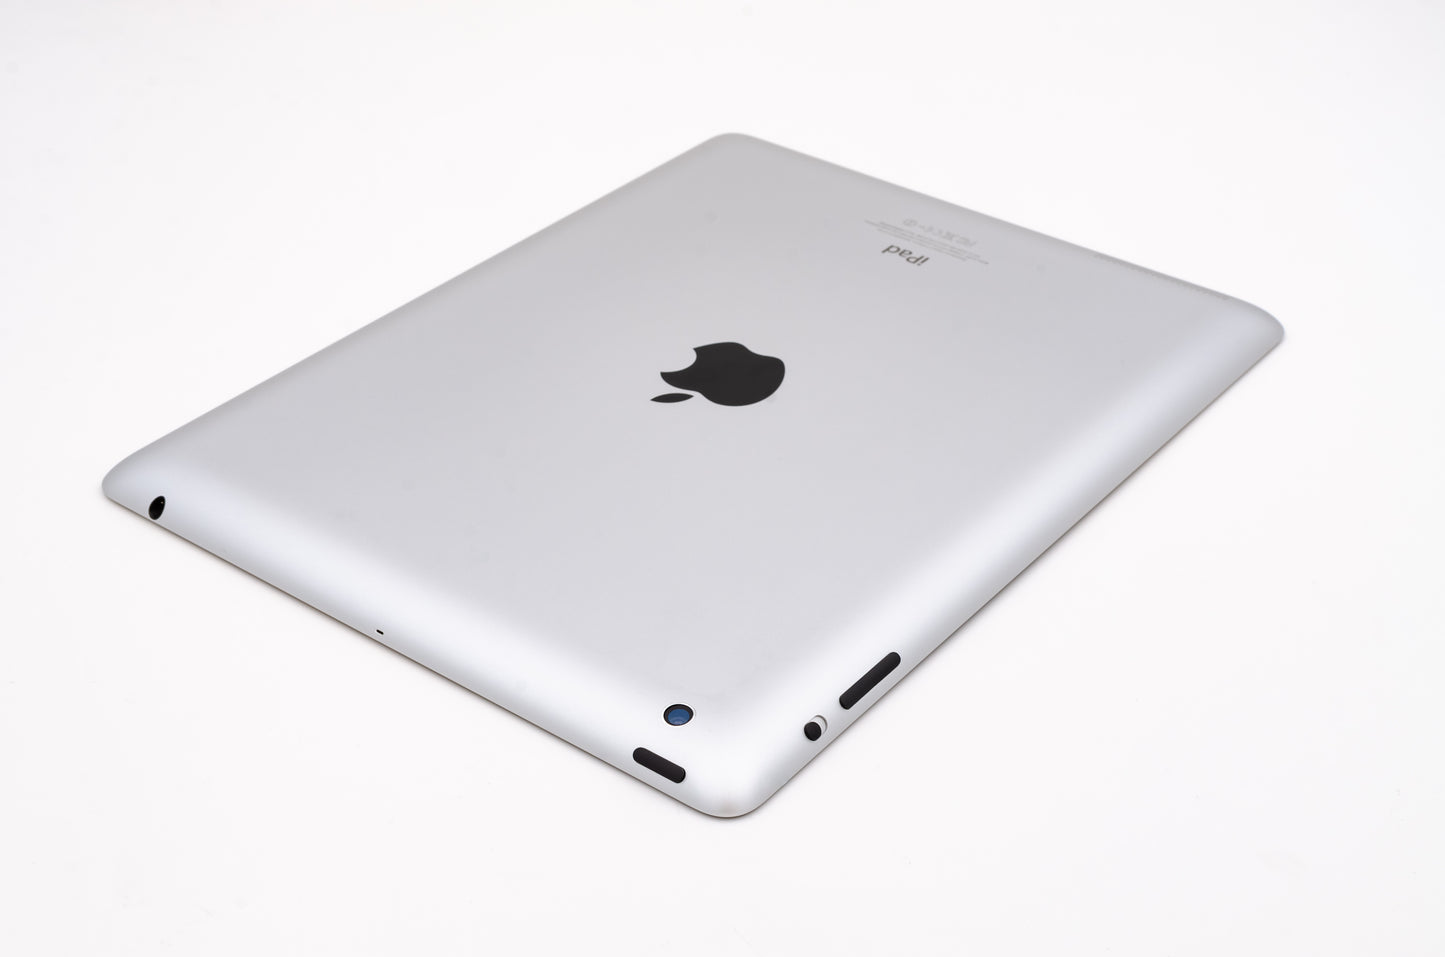 apple-2012-9.7-inch-ipad-4-a1459-silver/black-3